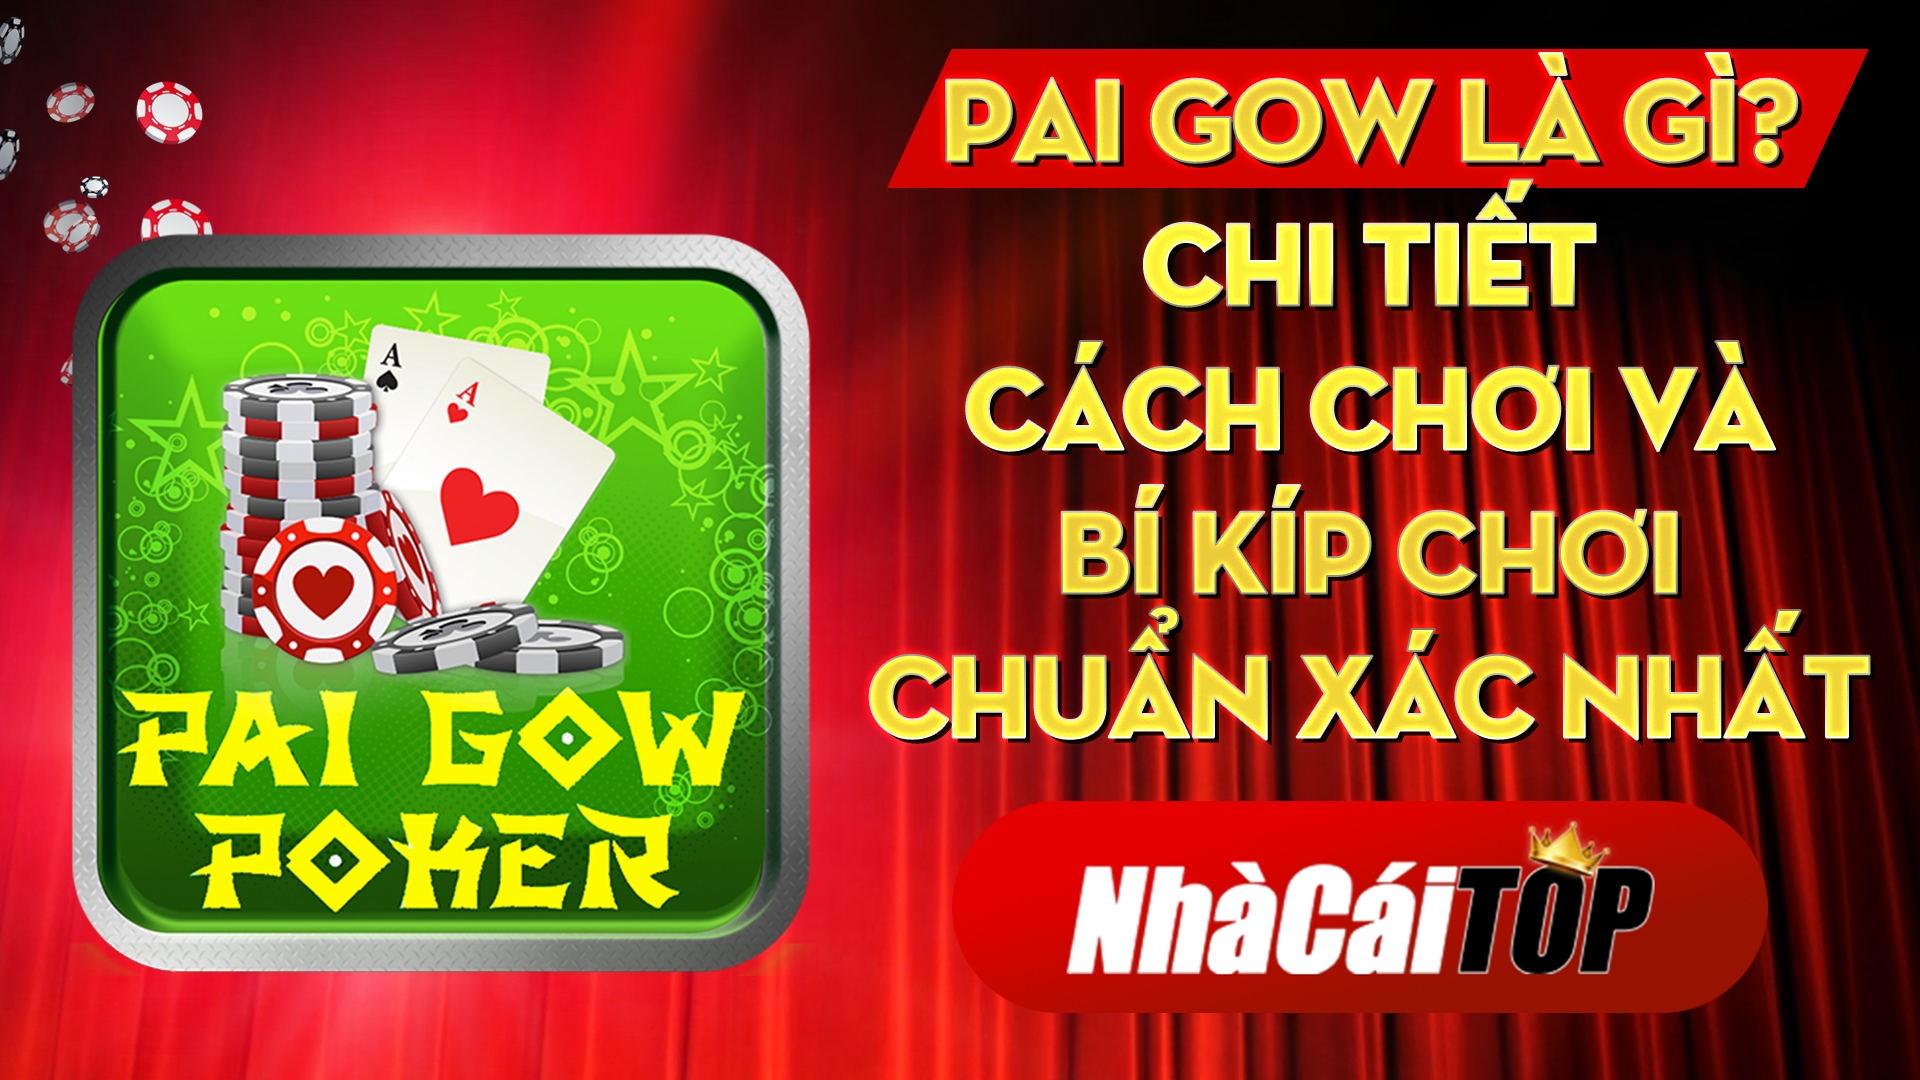 Pai Gow là gì? Chi tiết cách chơi và bí kíp chơi chuẩn xác nhất